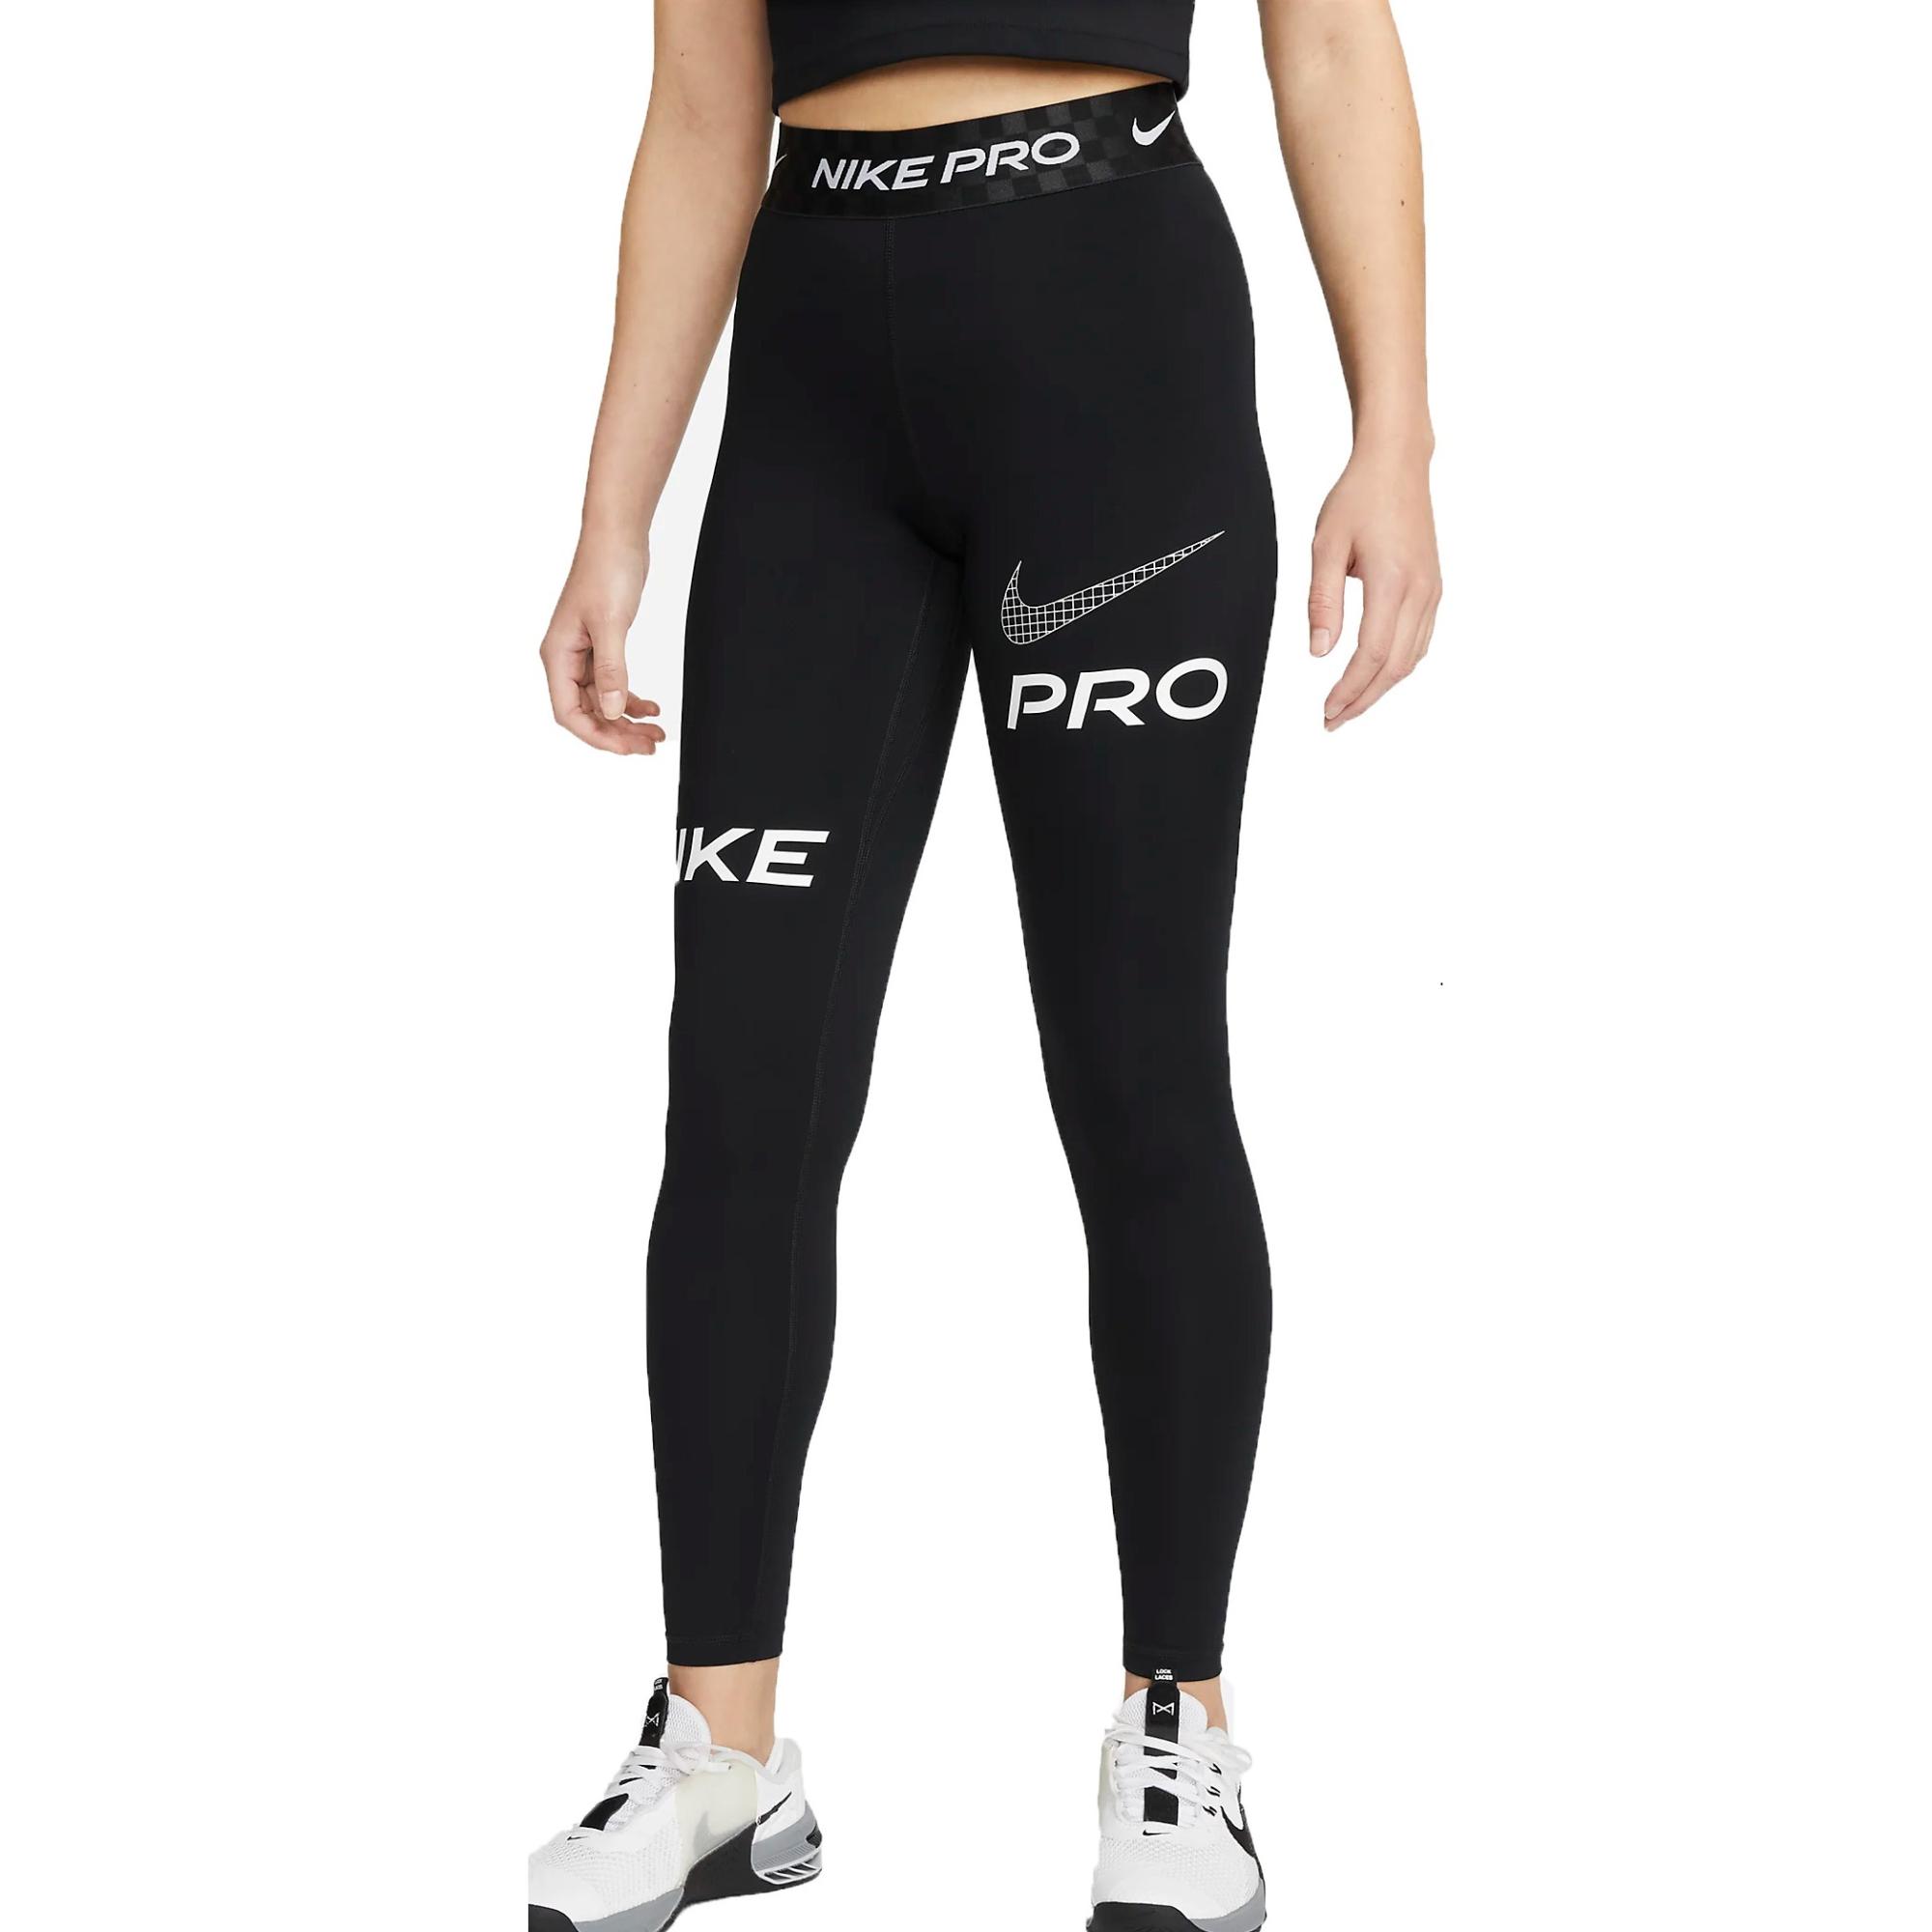 Mallas de entrenamiento para mujer - Nike Pro - DX0080-010